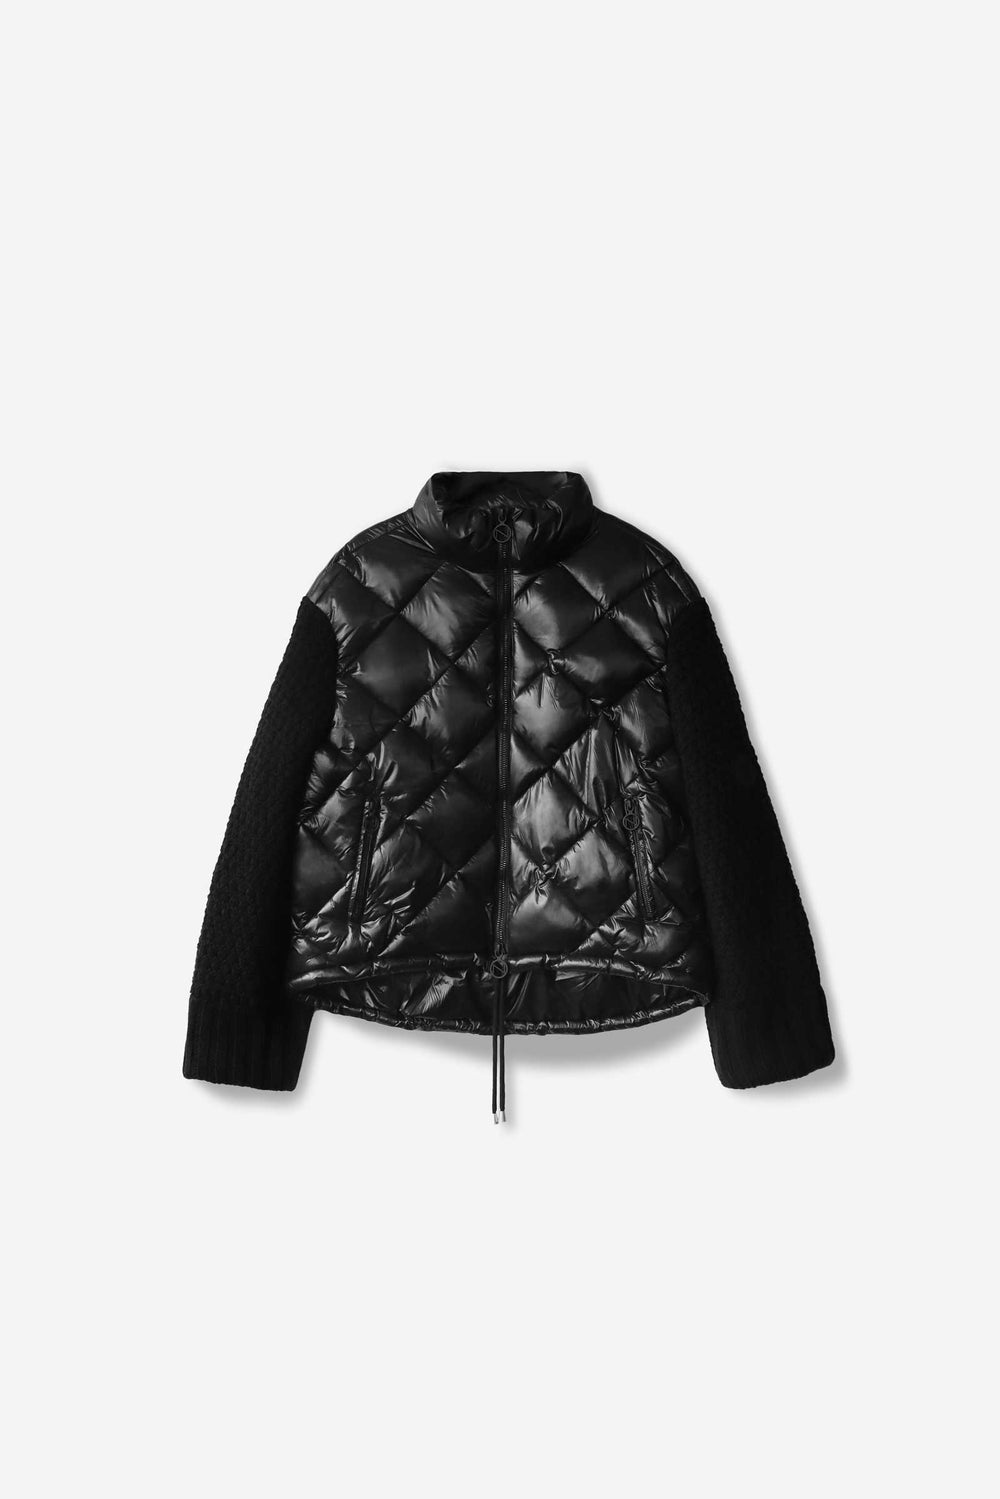 Noize Alejandra Mixed Media Puffer Jacket in Black